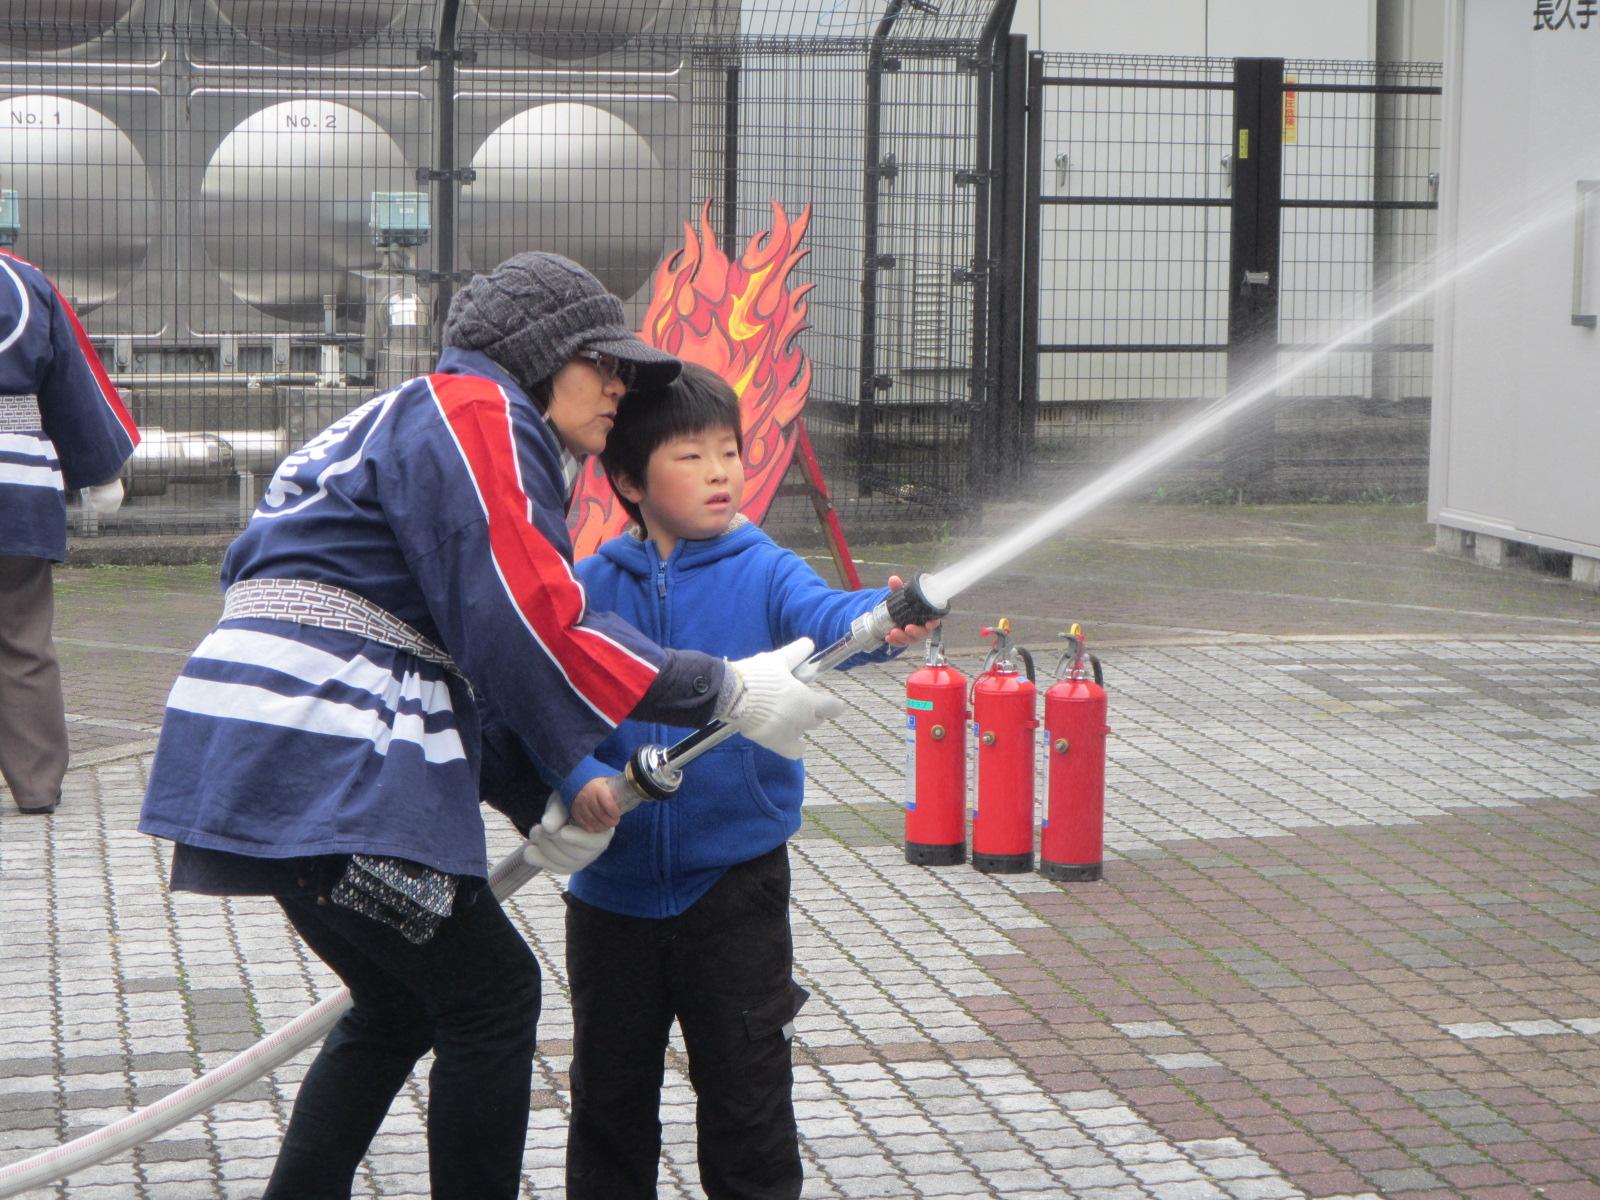 長久手市女性消防クラブ員と一緒にホースを持って放水作業をする子供の写真